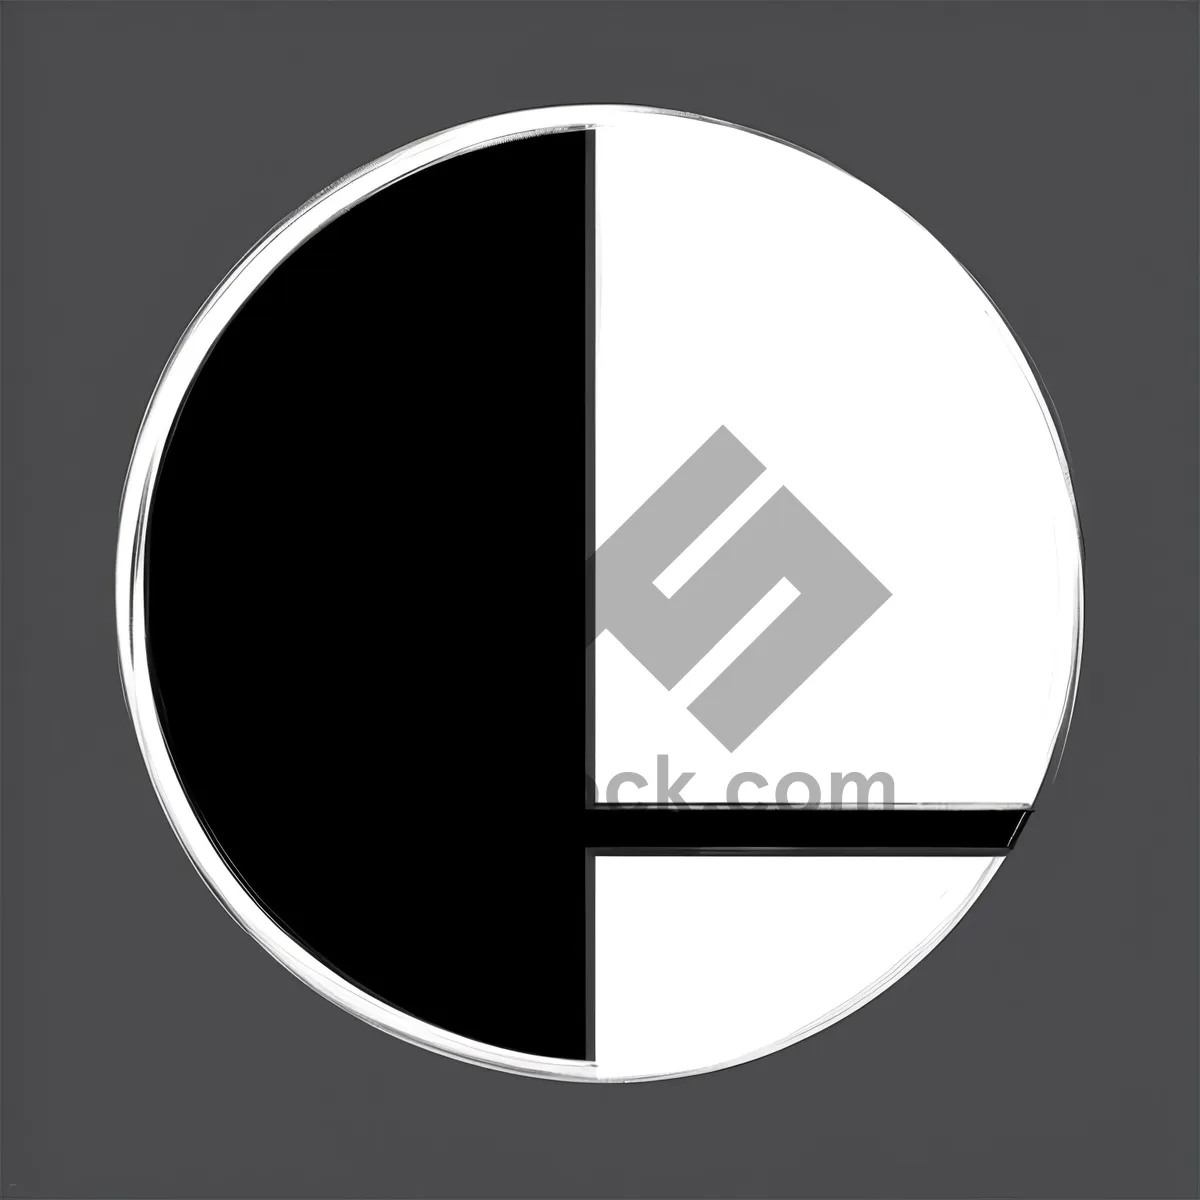 Shiny Black Round Graphic Button Icon